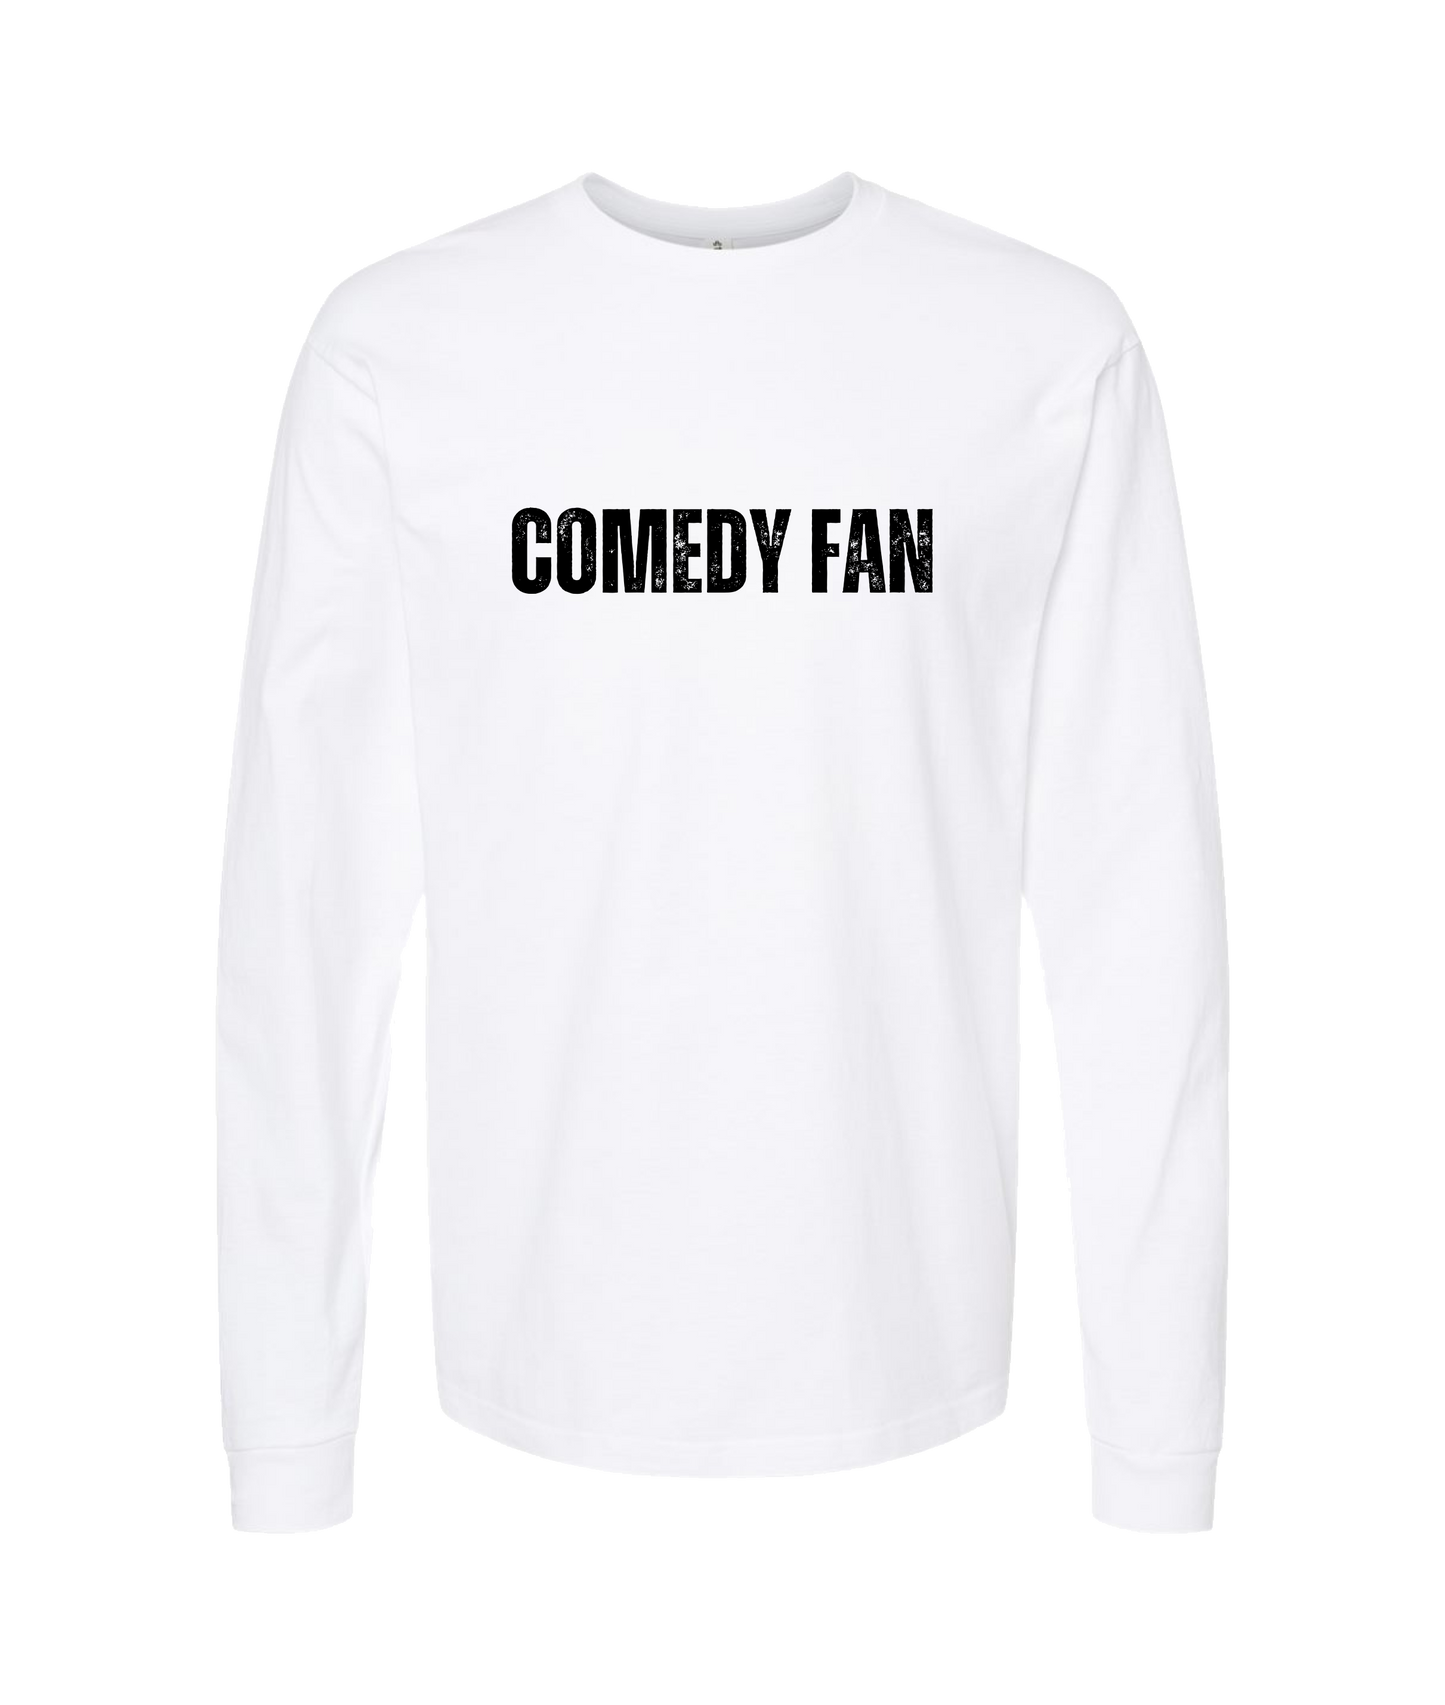 Tammie Bernal Comedy - Comedy Fan - White Long Sleeve T